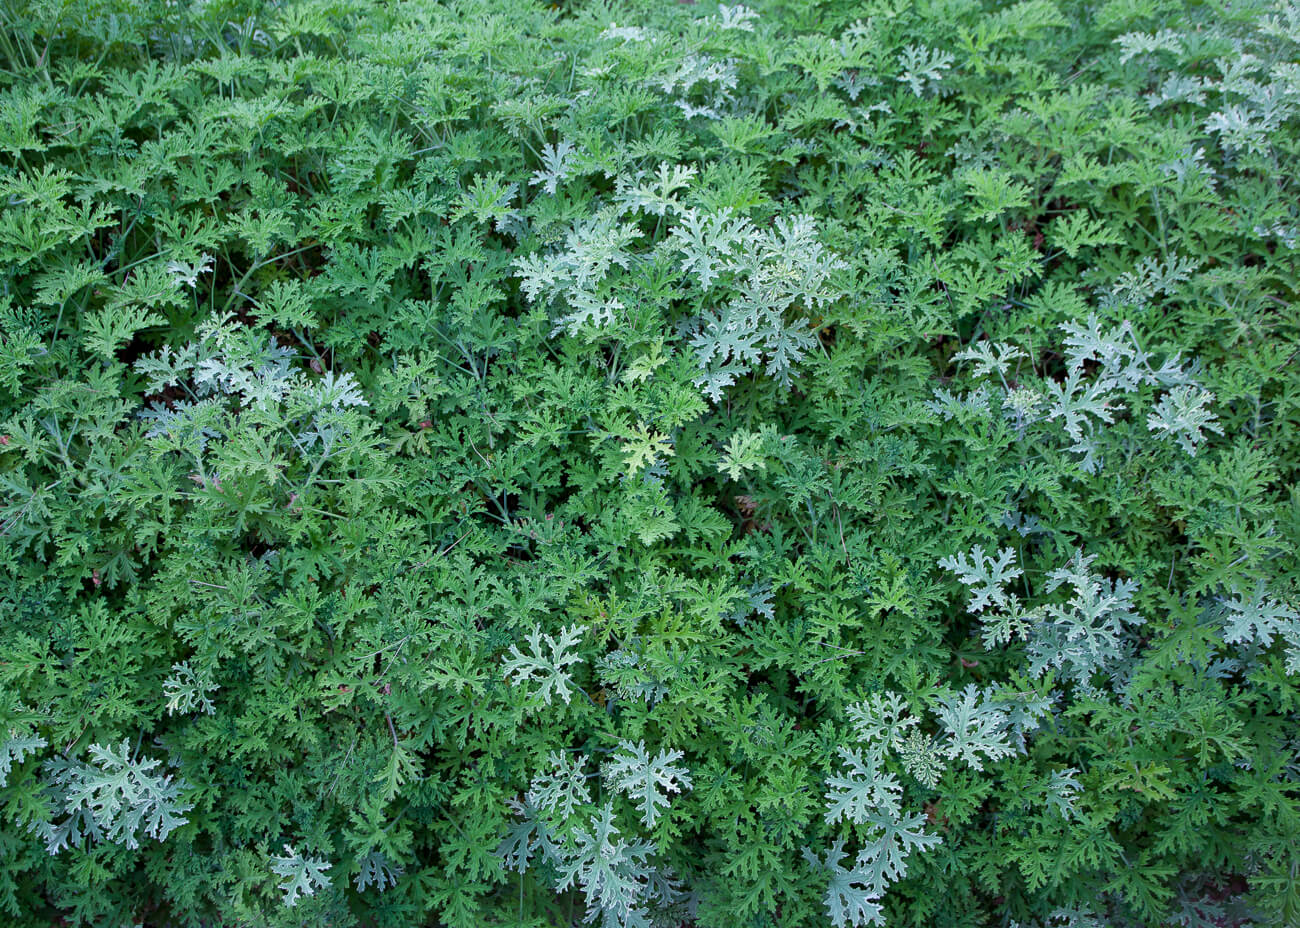 Pelargonium geranium passage jardins de cap roig